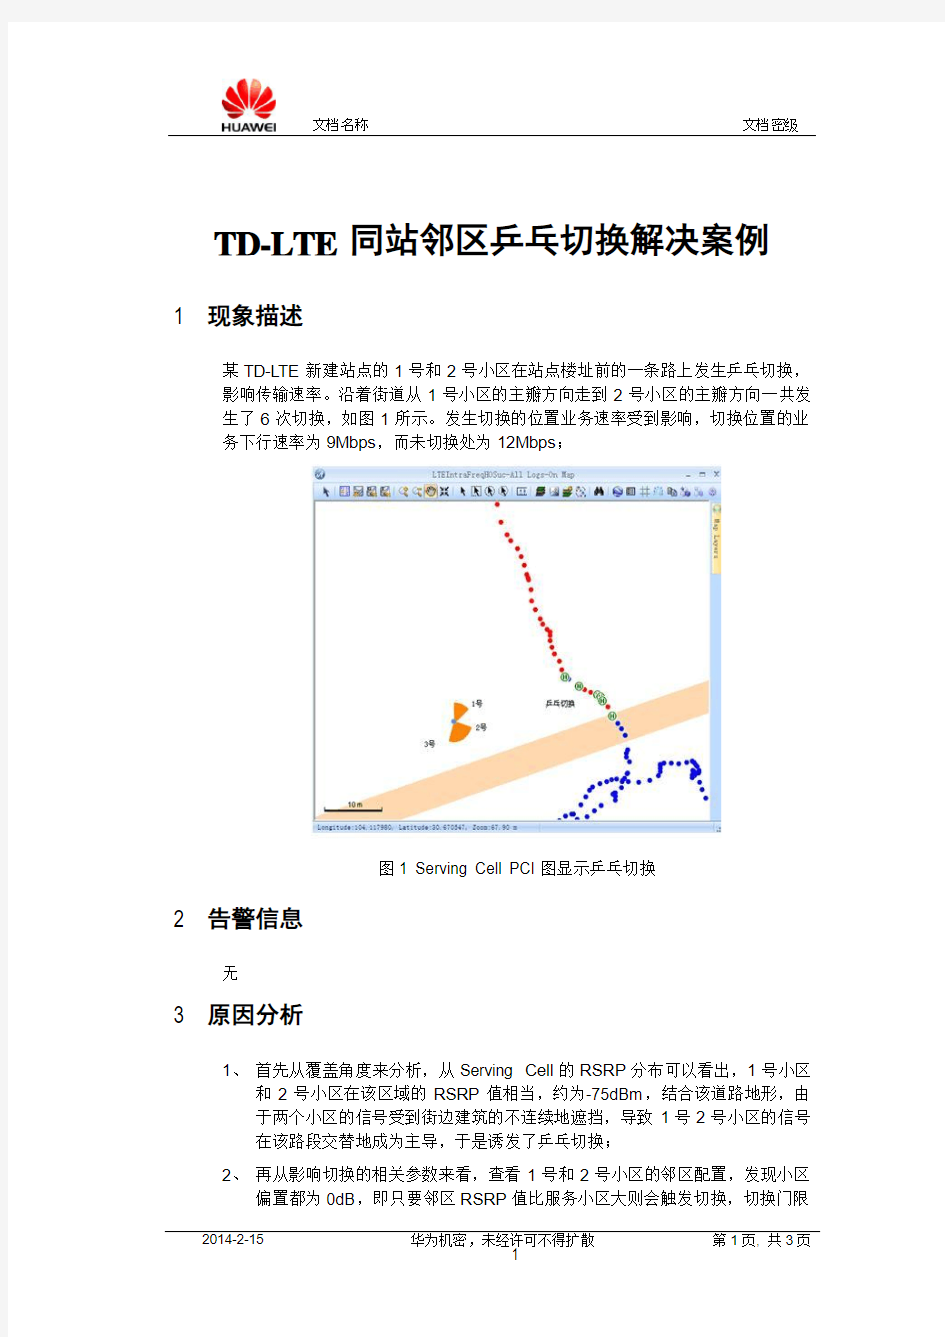 切换判决-TD-LTE同站邻区乒乓切换解决案例